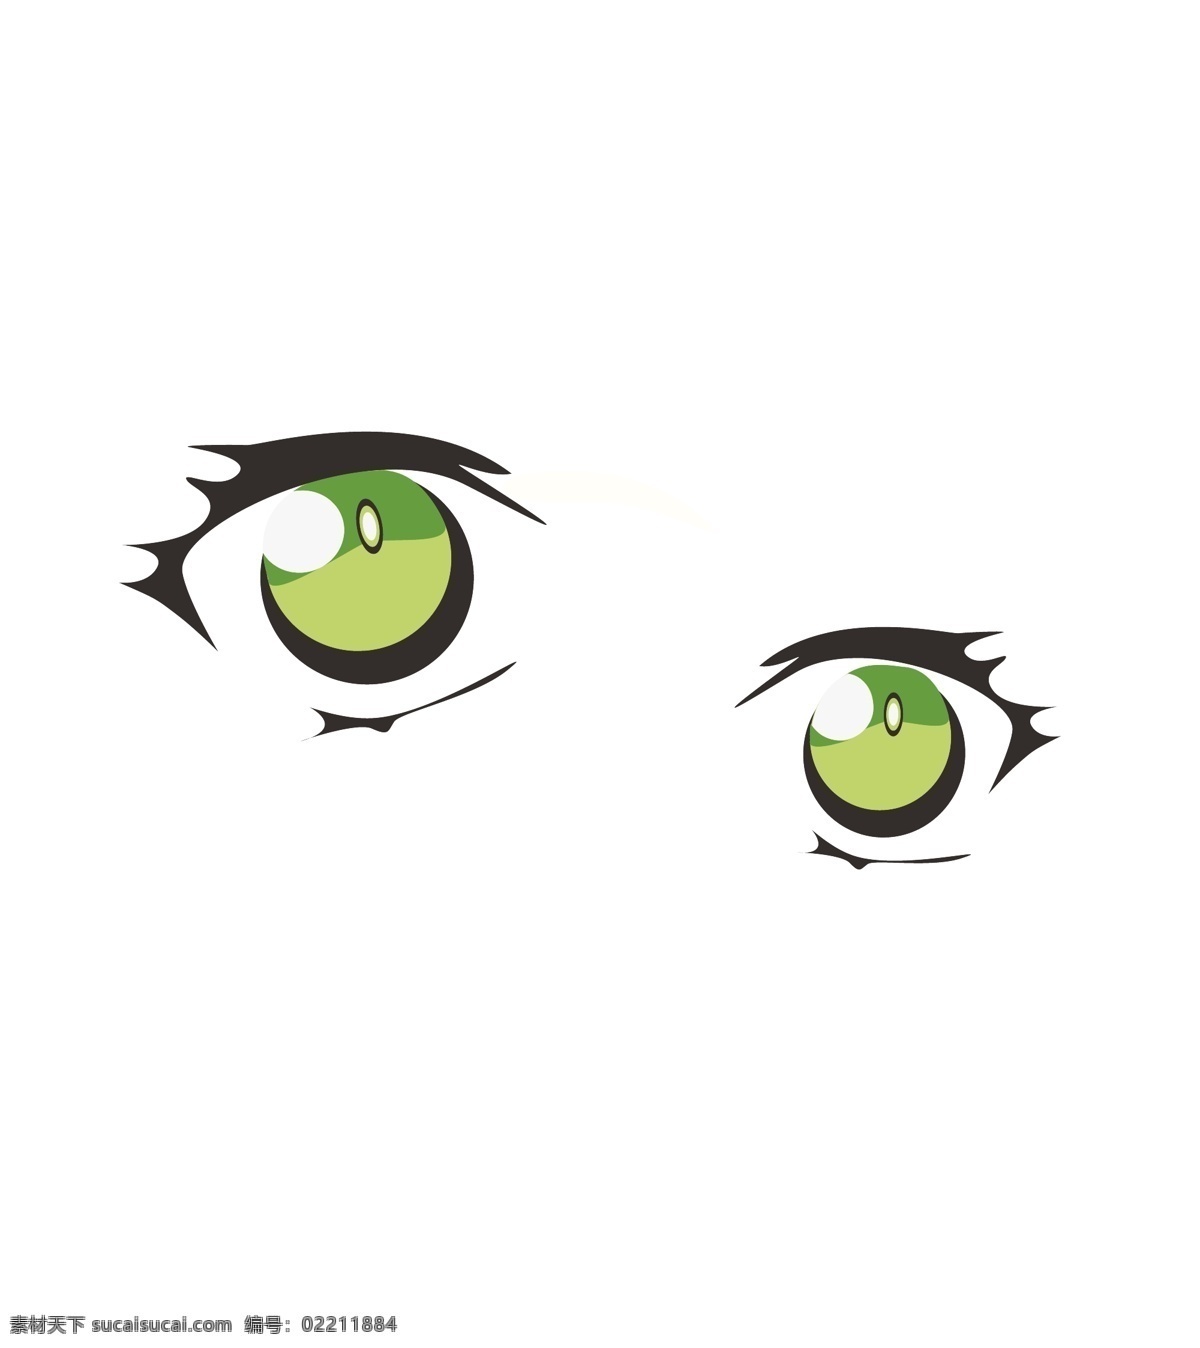 手绘卡通眼睛 手绘 卡通 眼睛 绿色眼睛 卡通人物眼睛 动漫动画